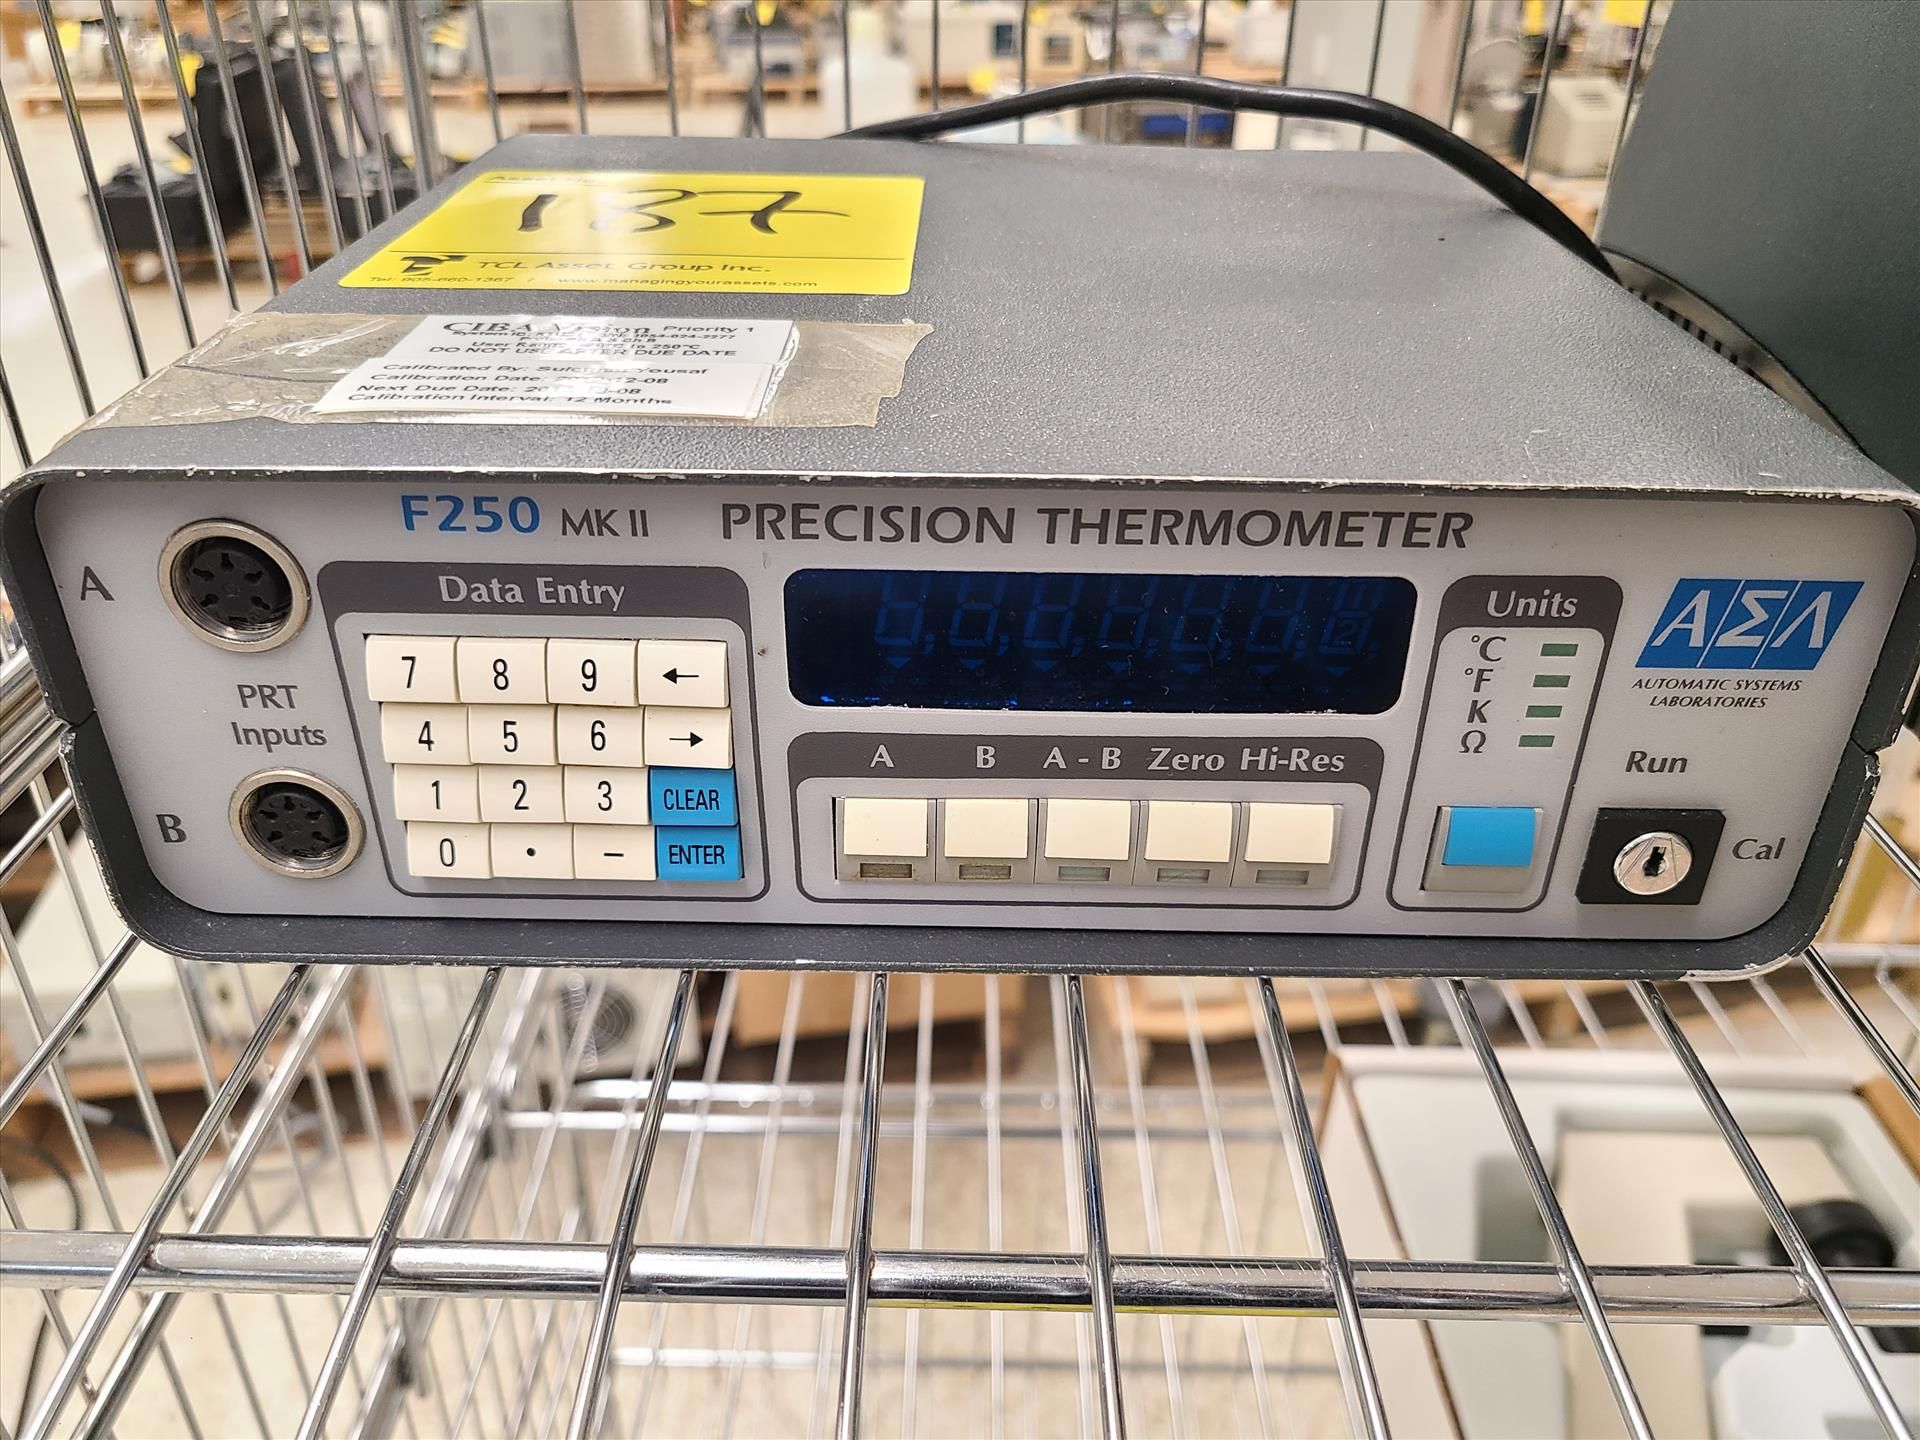 Automatic Systems Laboratories Precision Thermometer, mod. F250 MK II, ser. no. 9054 024 2277 - Bild 2 aus 3